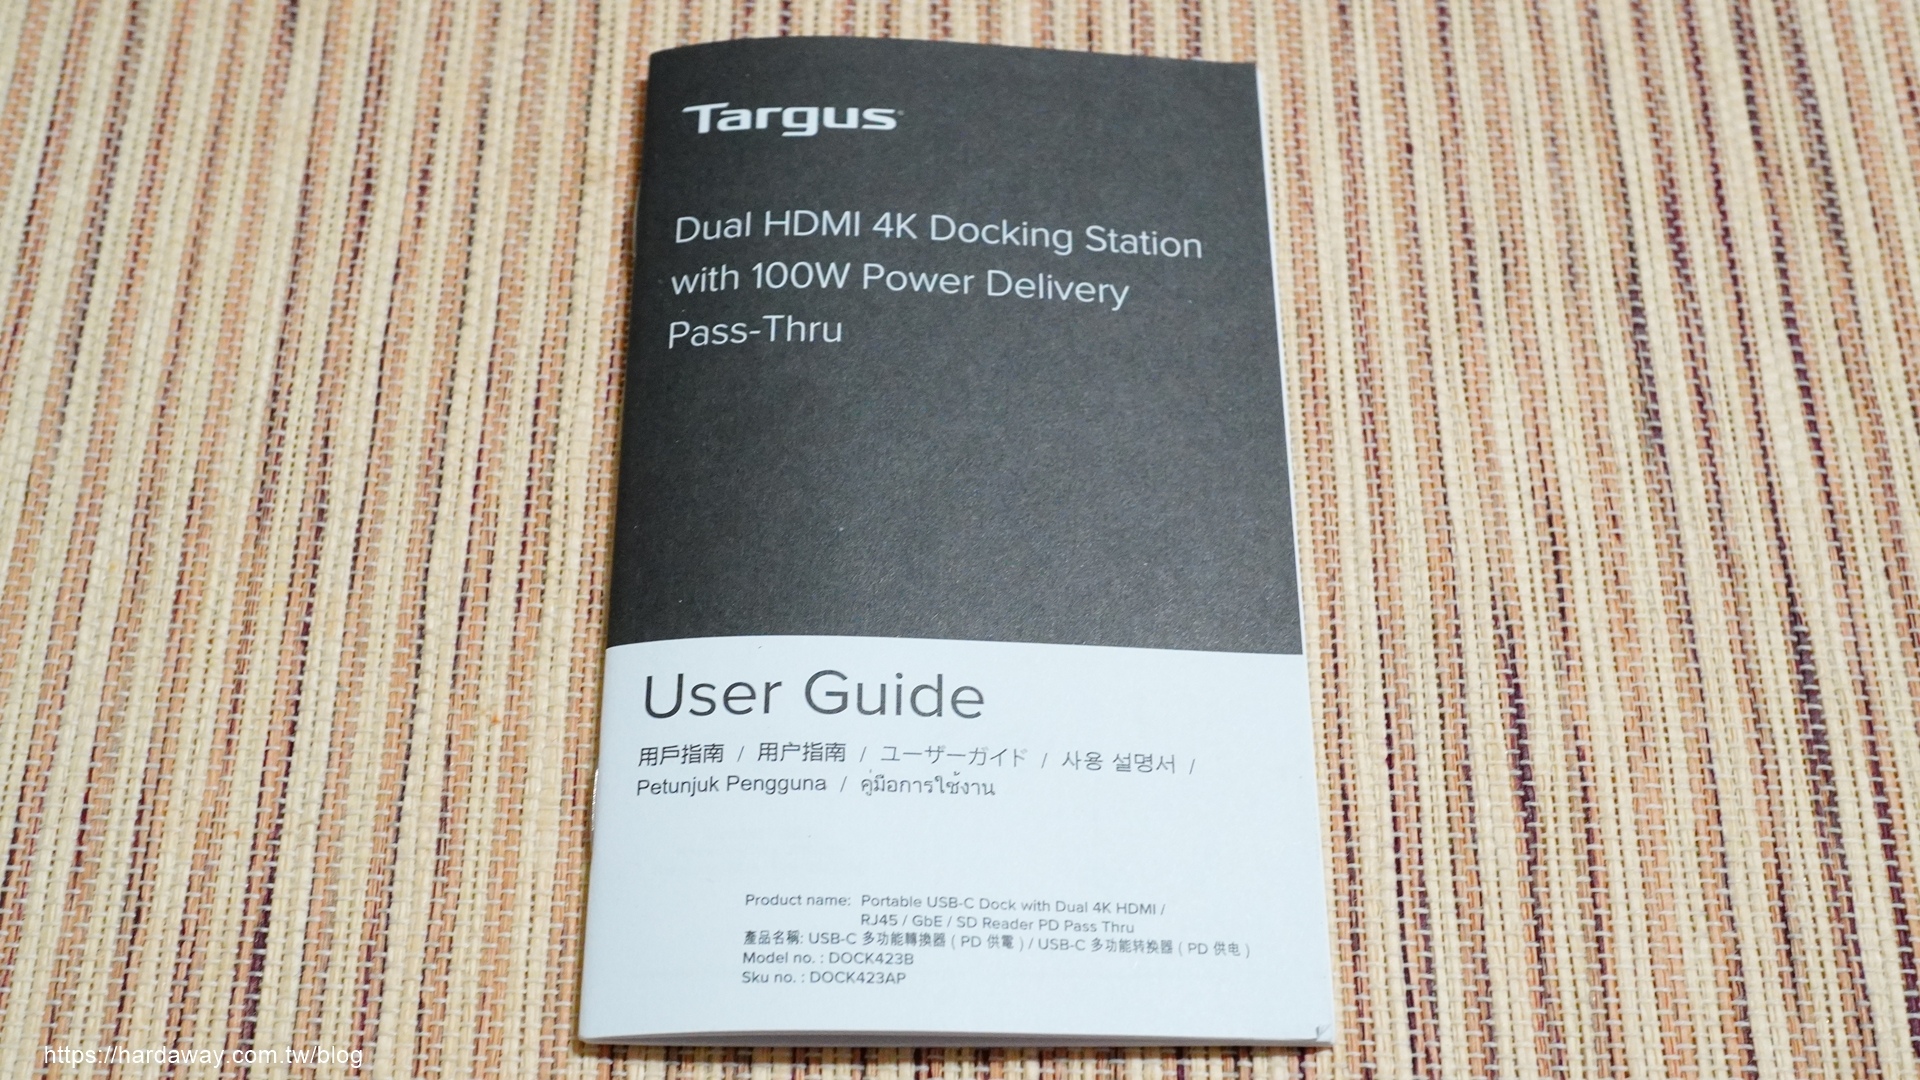 泰格斯Targus USB-C Dual HDMI 4K Docking Station with 100W PD多功能擴充埠使用說明書